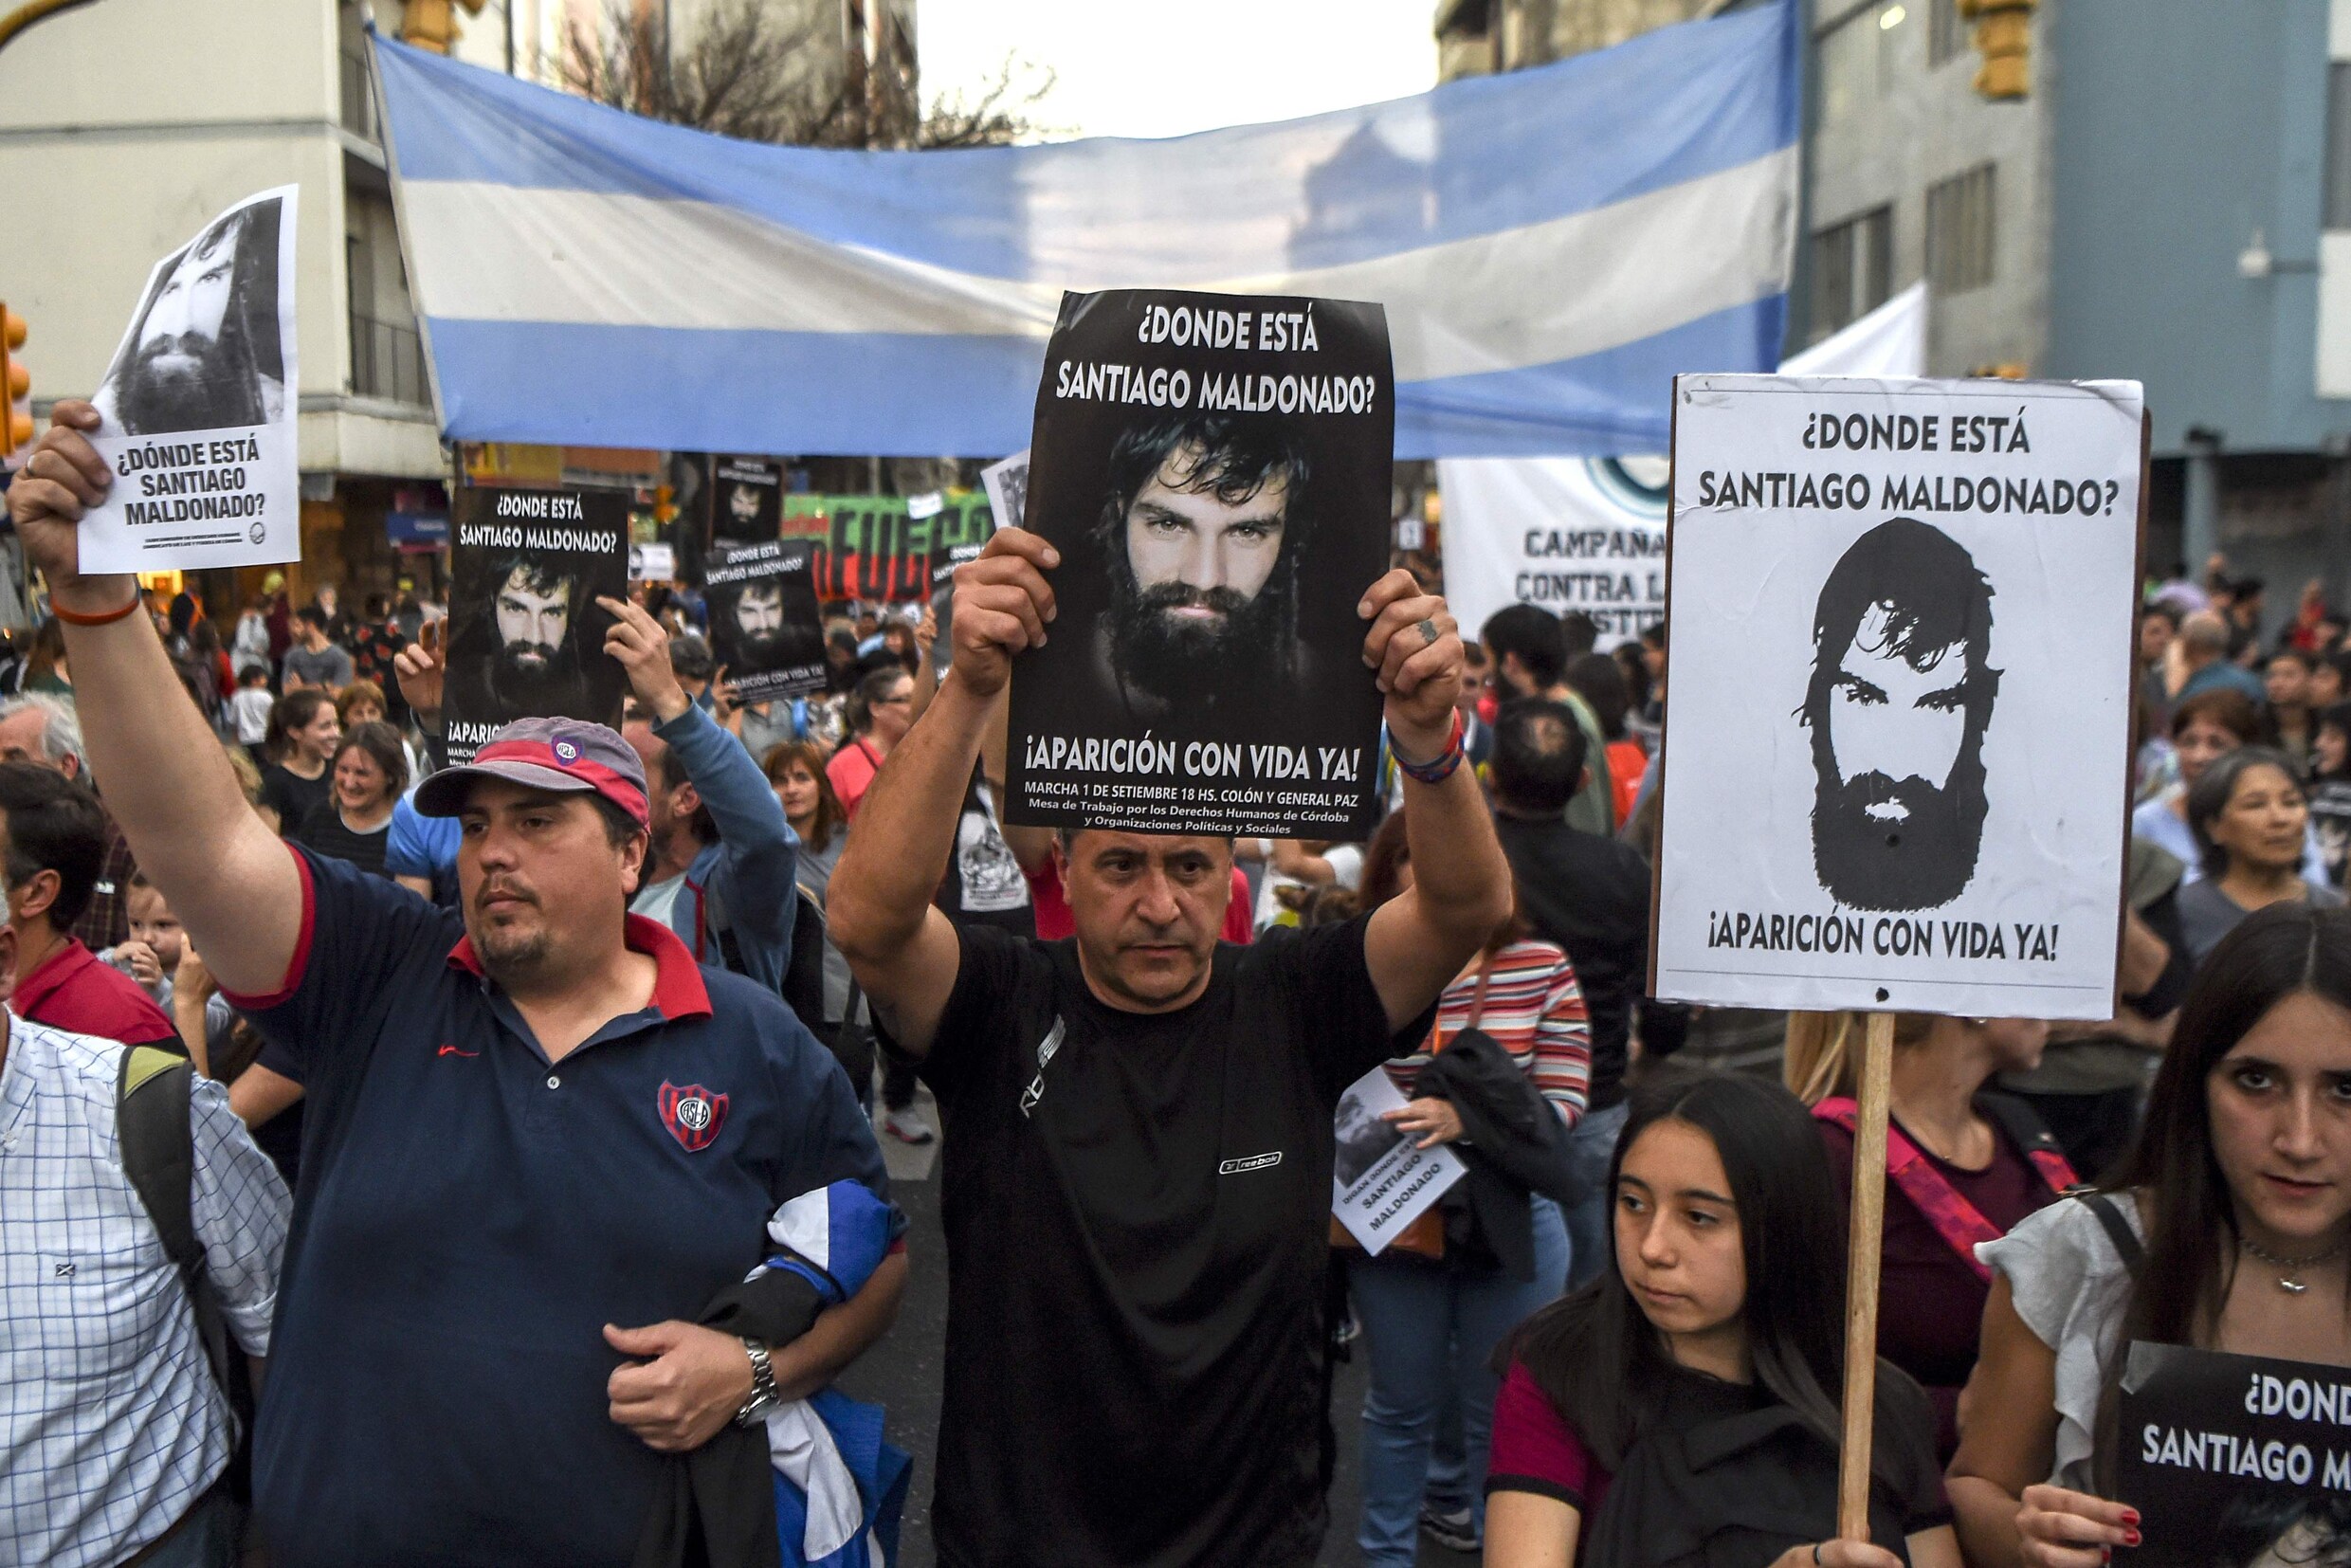 Verdwijning van jonge Argentijn brengt regering in nauwe schoentjes